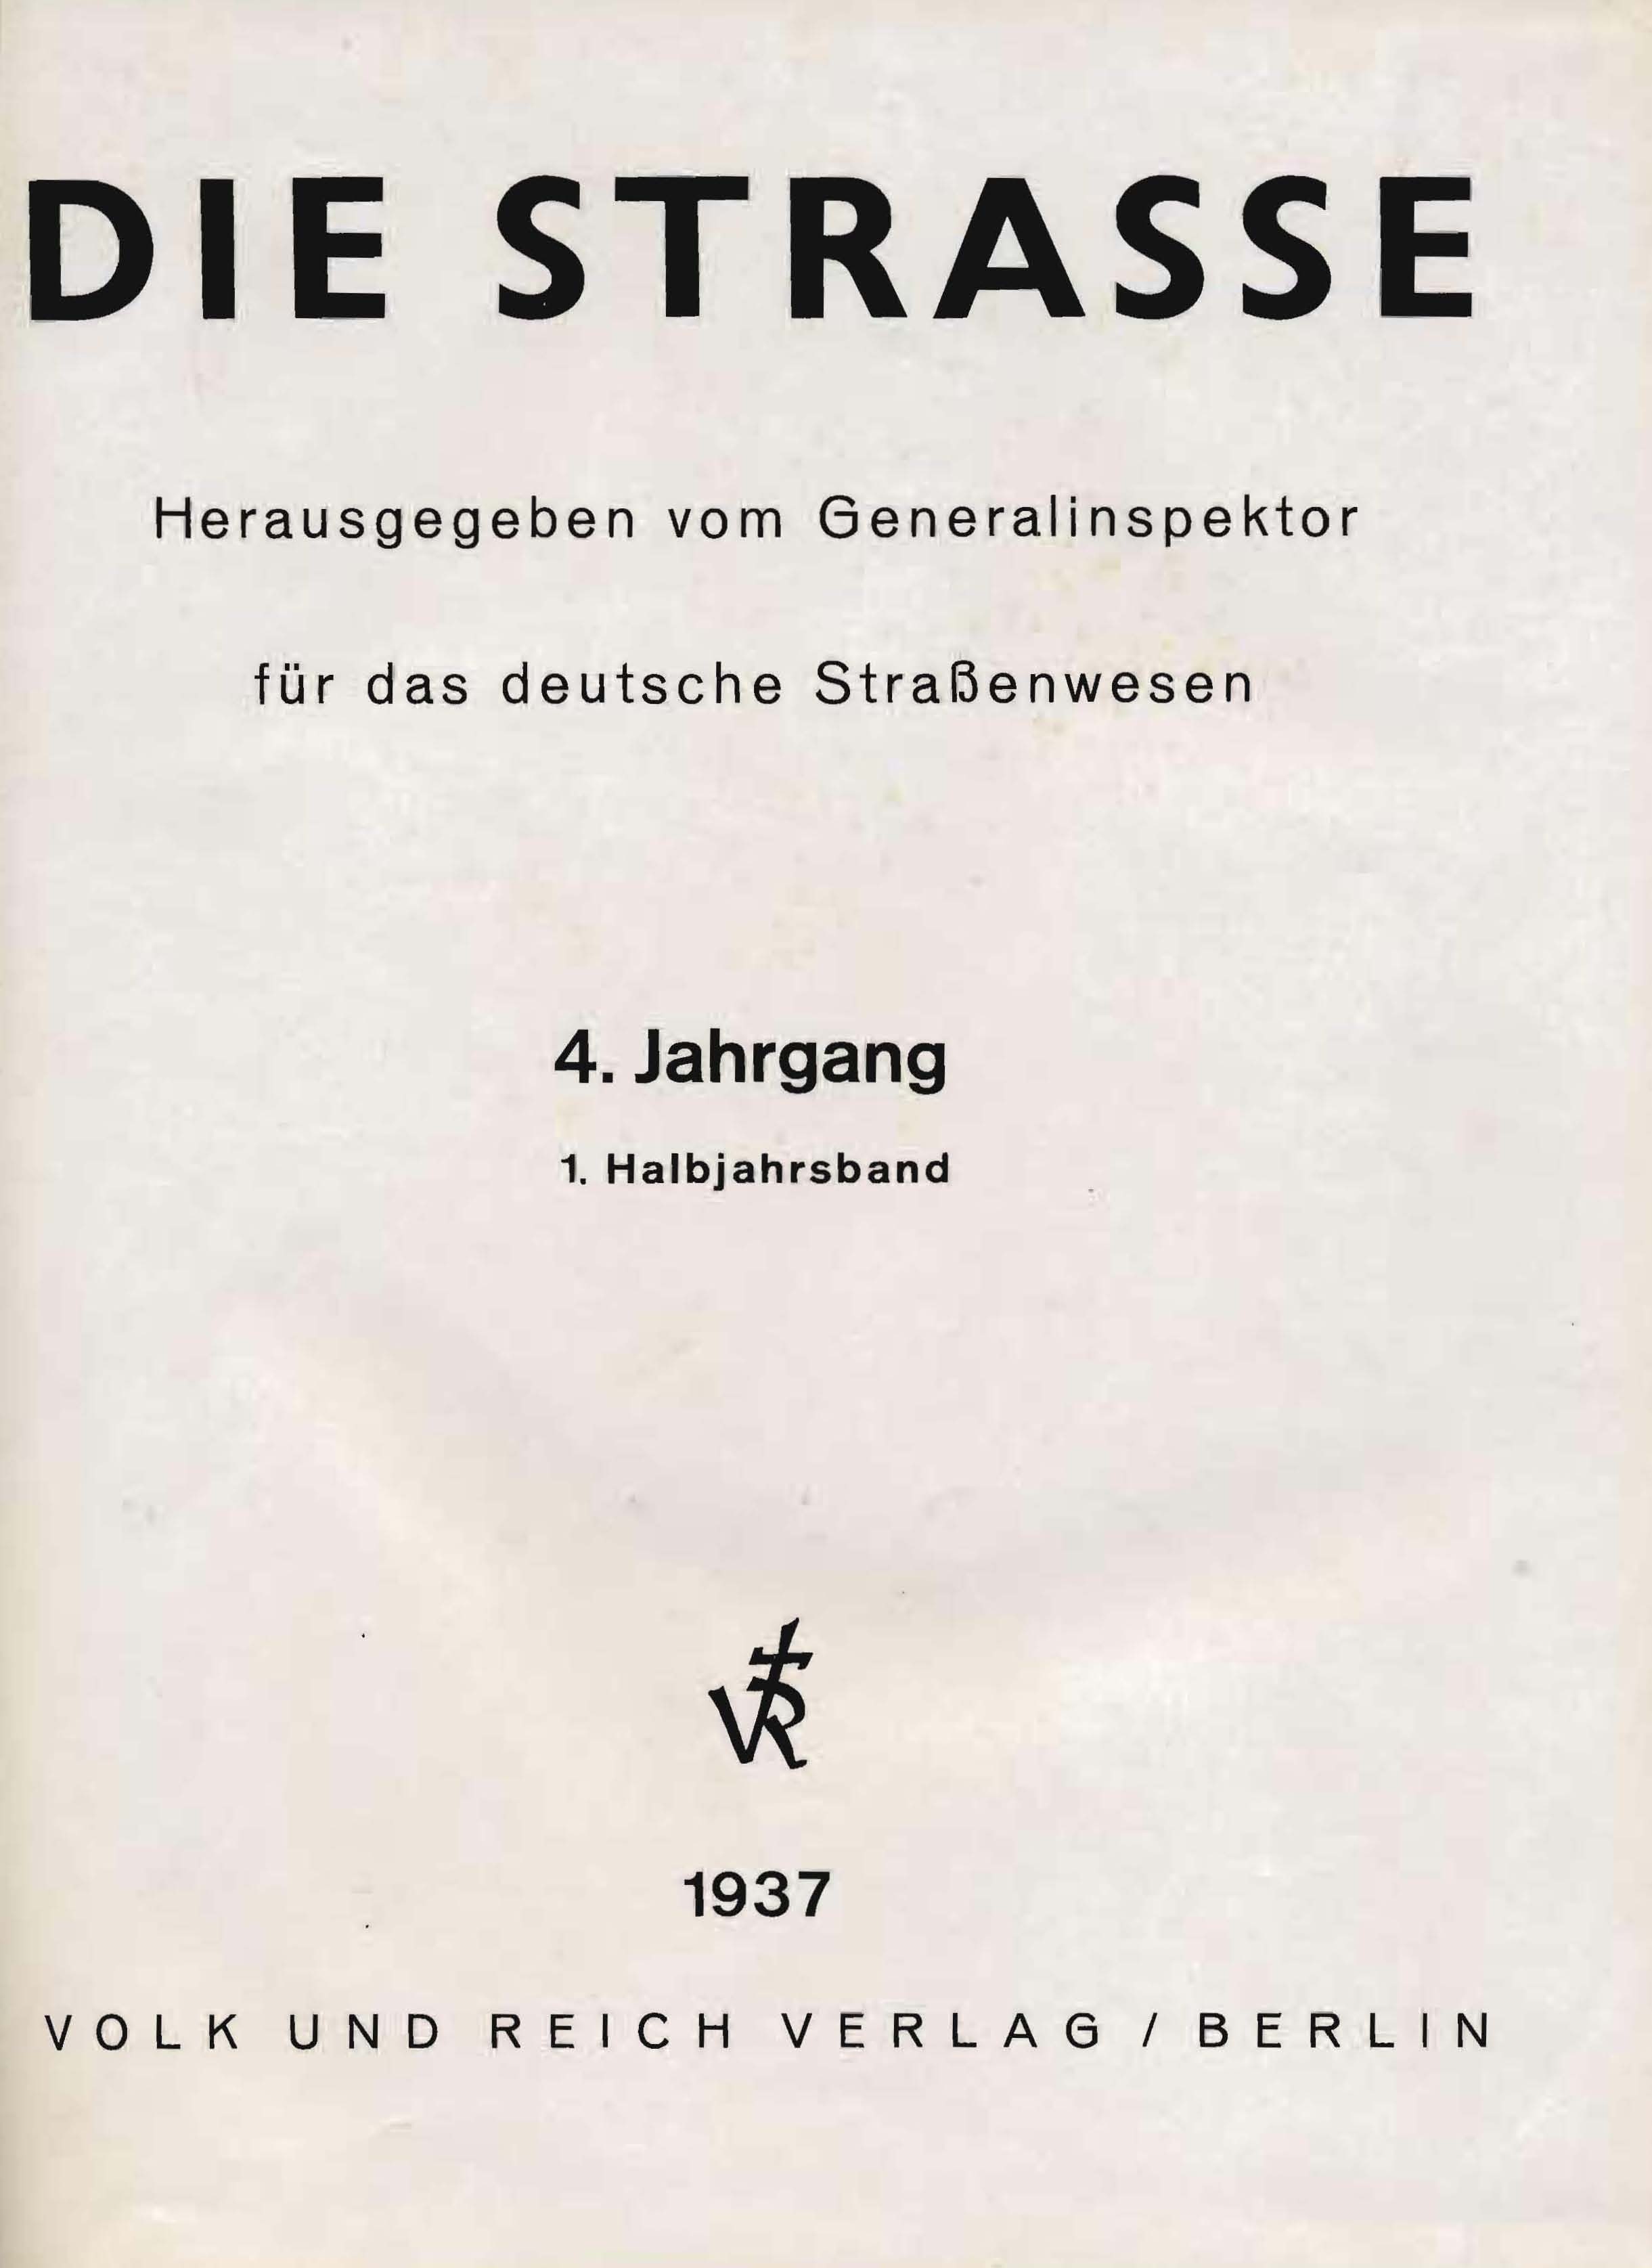 Die Straße, 4. Jahrgang 1937, 1. Halbjahrsband